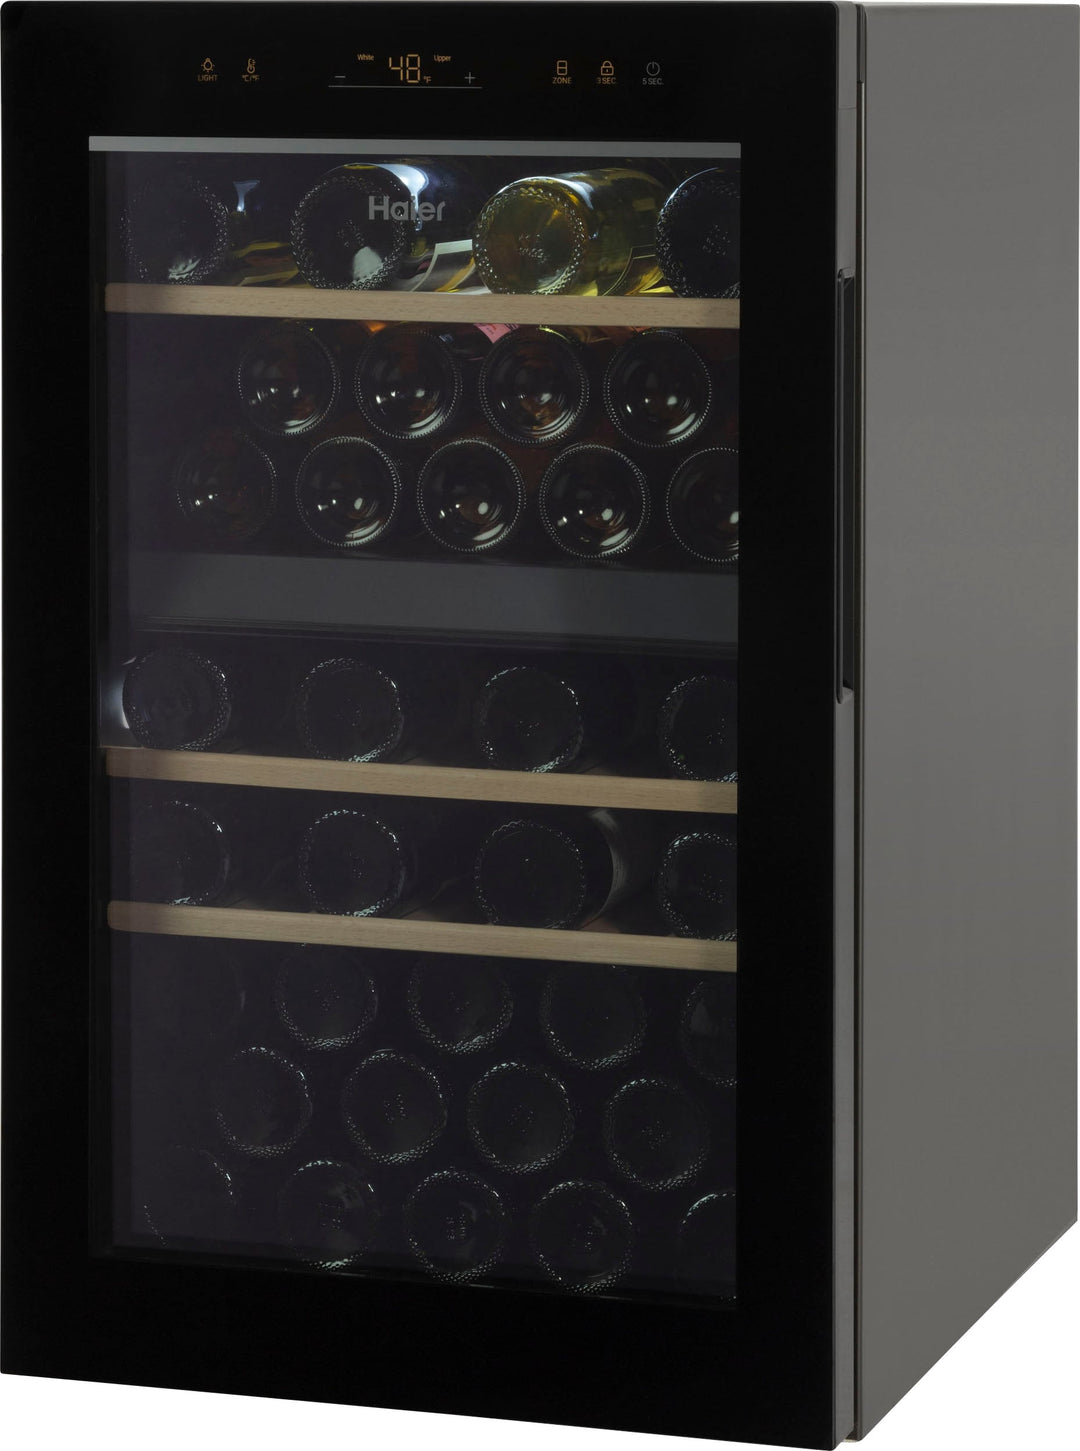 Haier - 44-Bottle Wine Cooler - Black glass_9